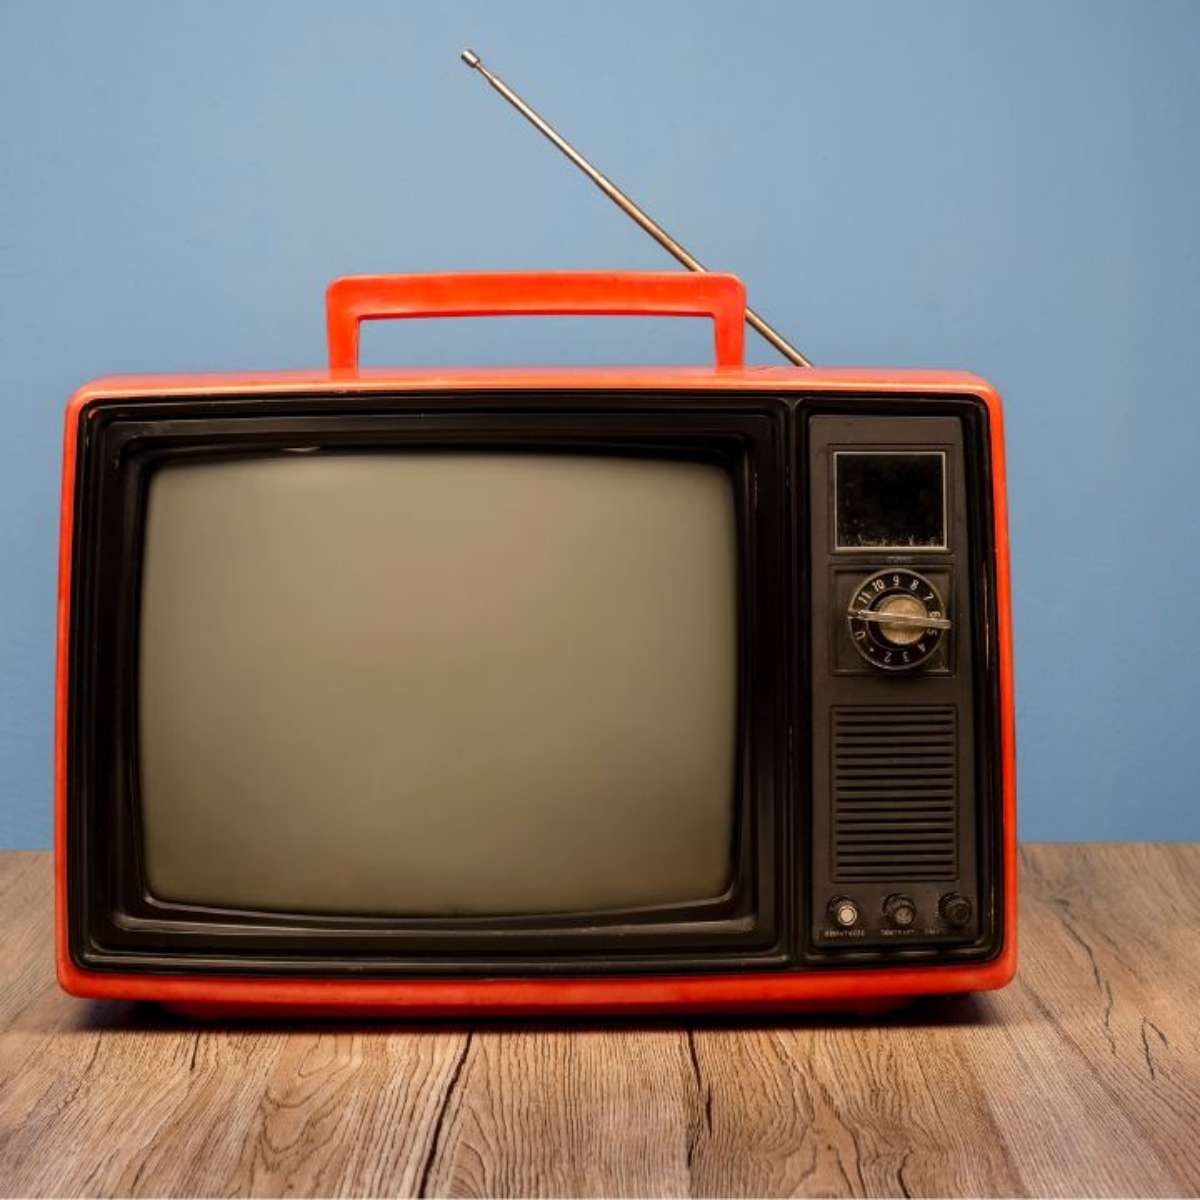 11 de agosto é Dia da Televisão. As datas comemorativas de hoje, sexta